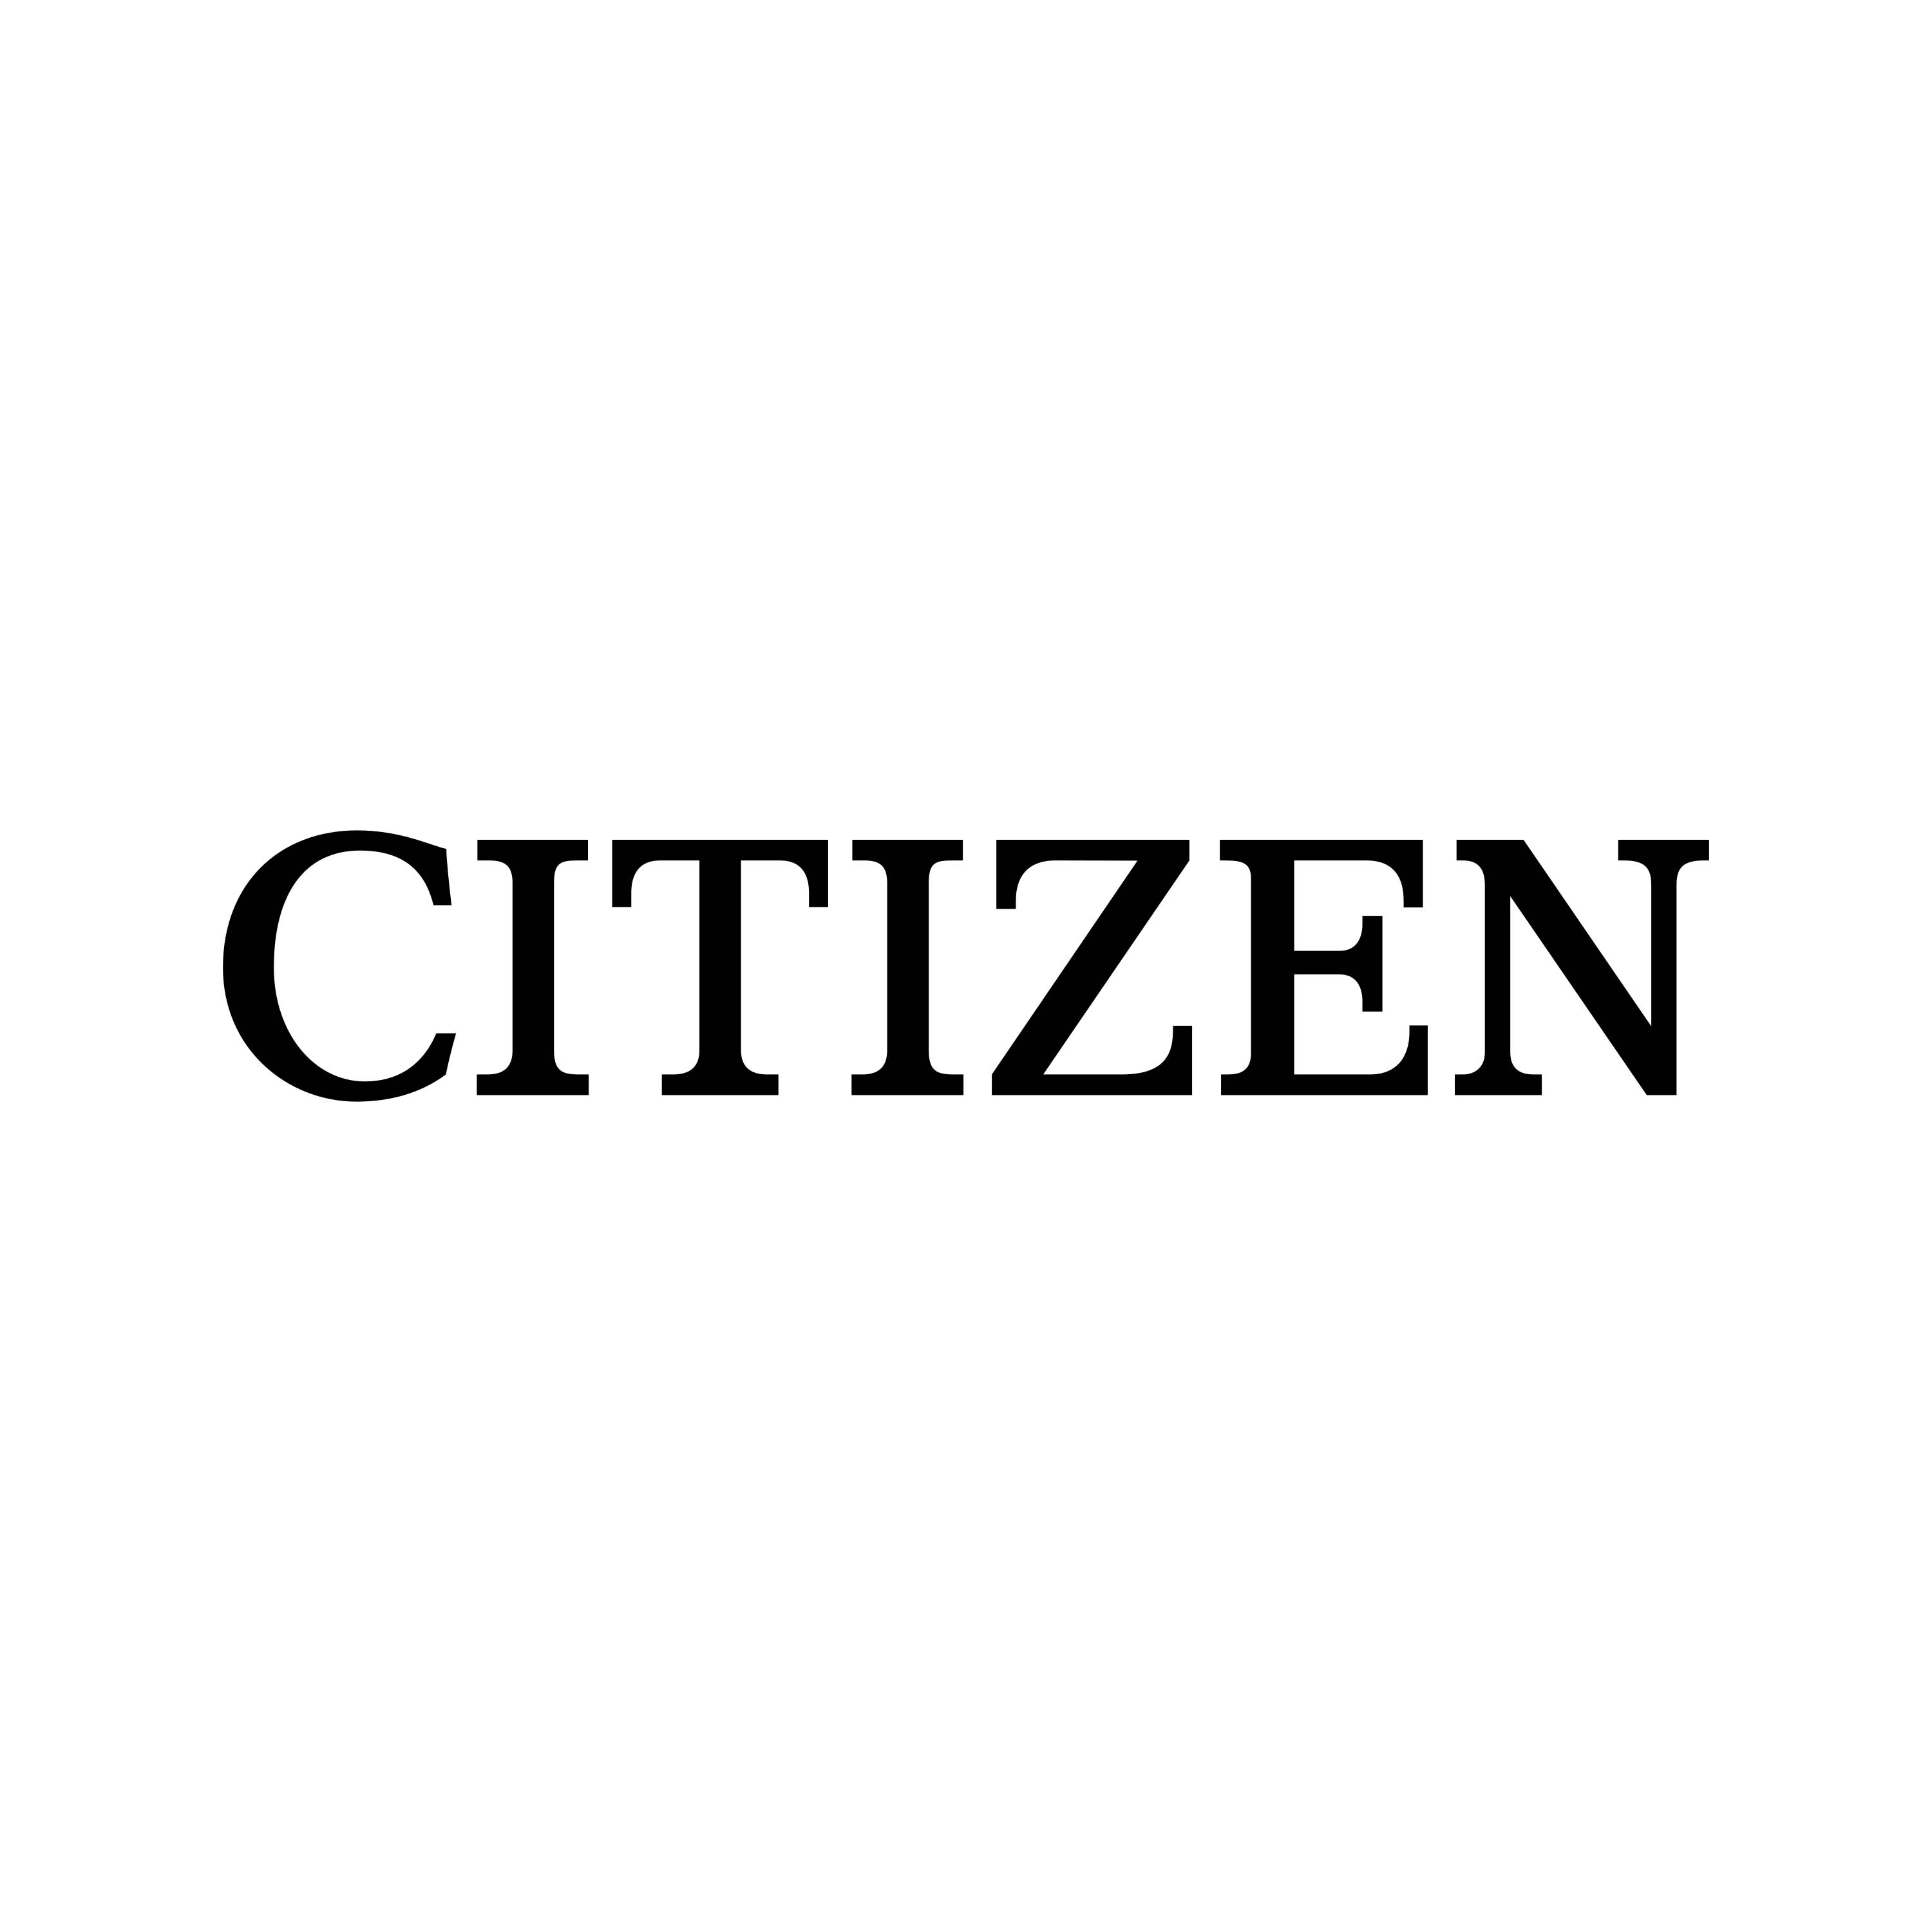 Citizen Image